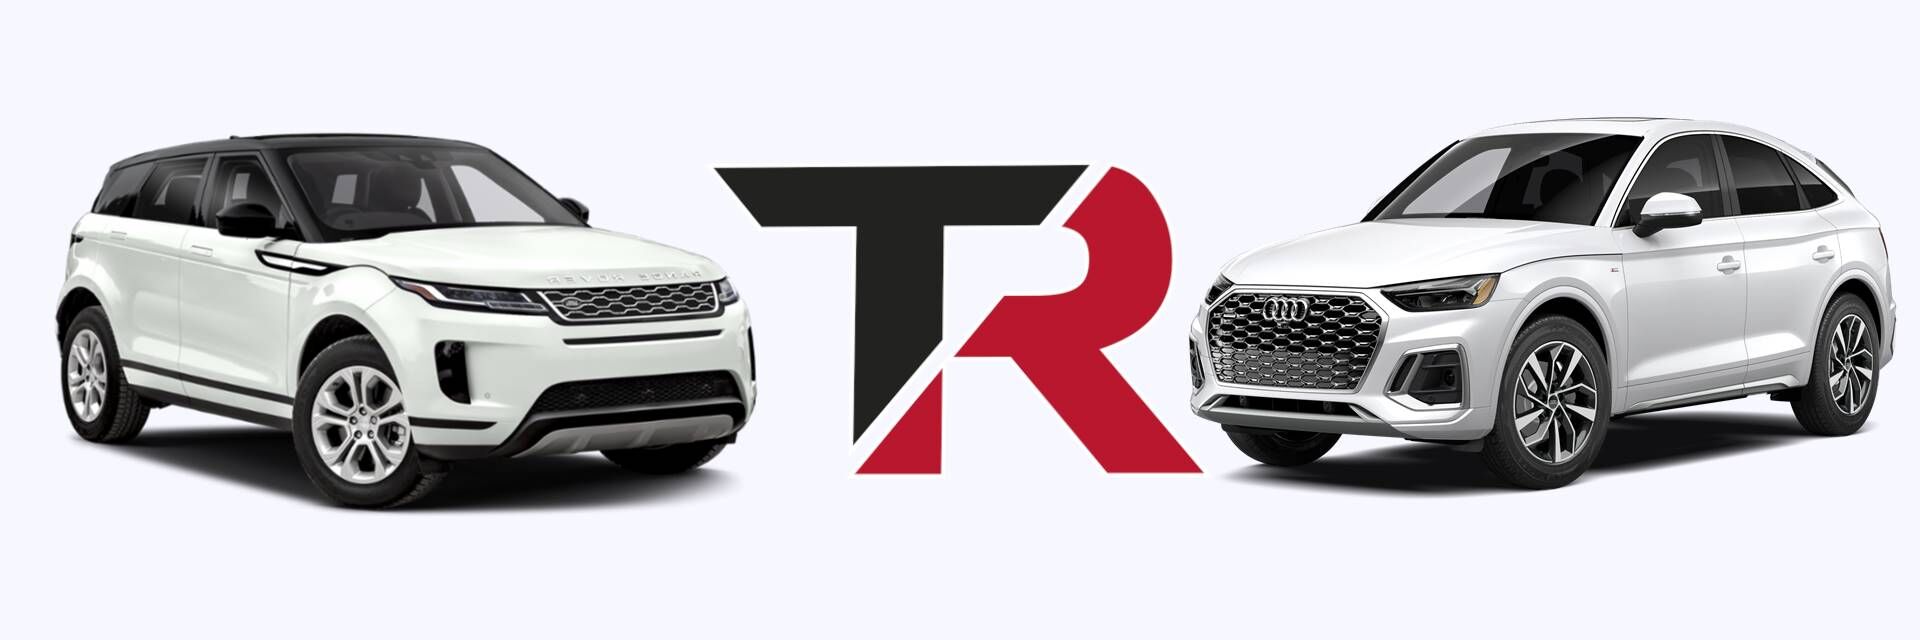 Comparativa Range Rover Evoque y Audi Q5 ¿Qué coche comprar?